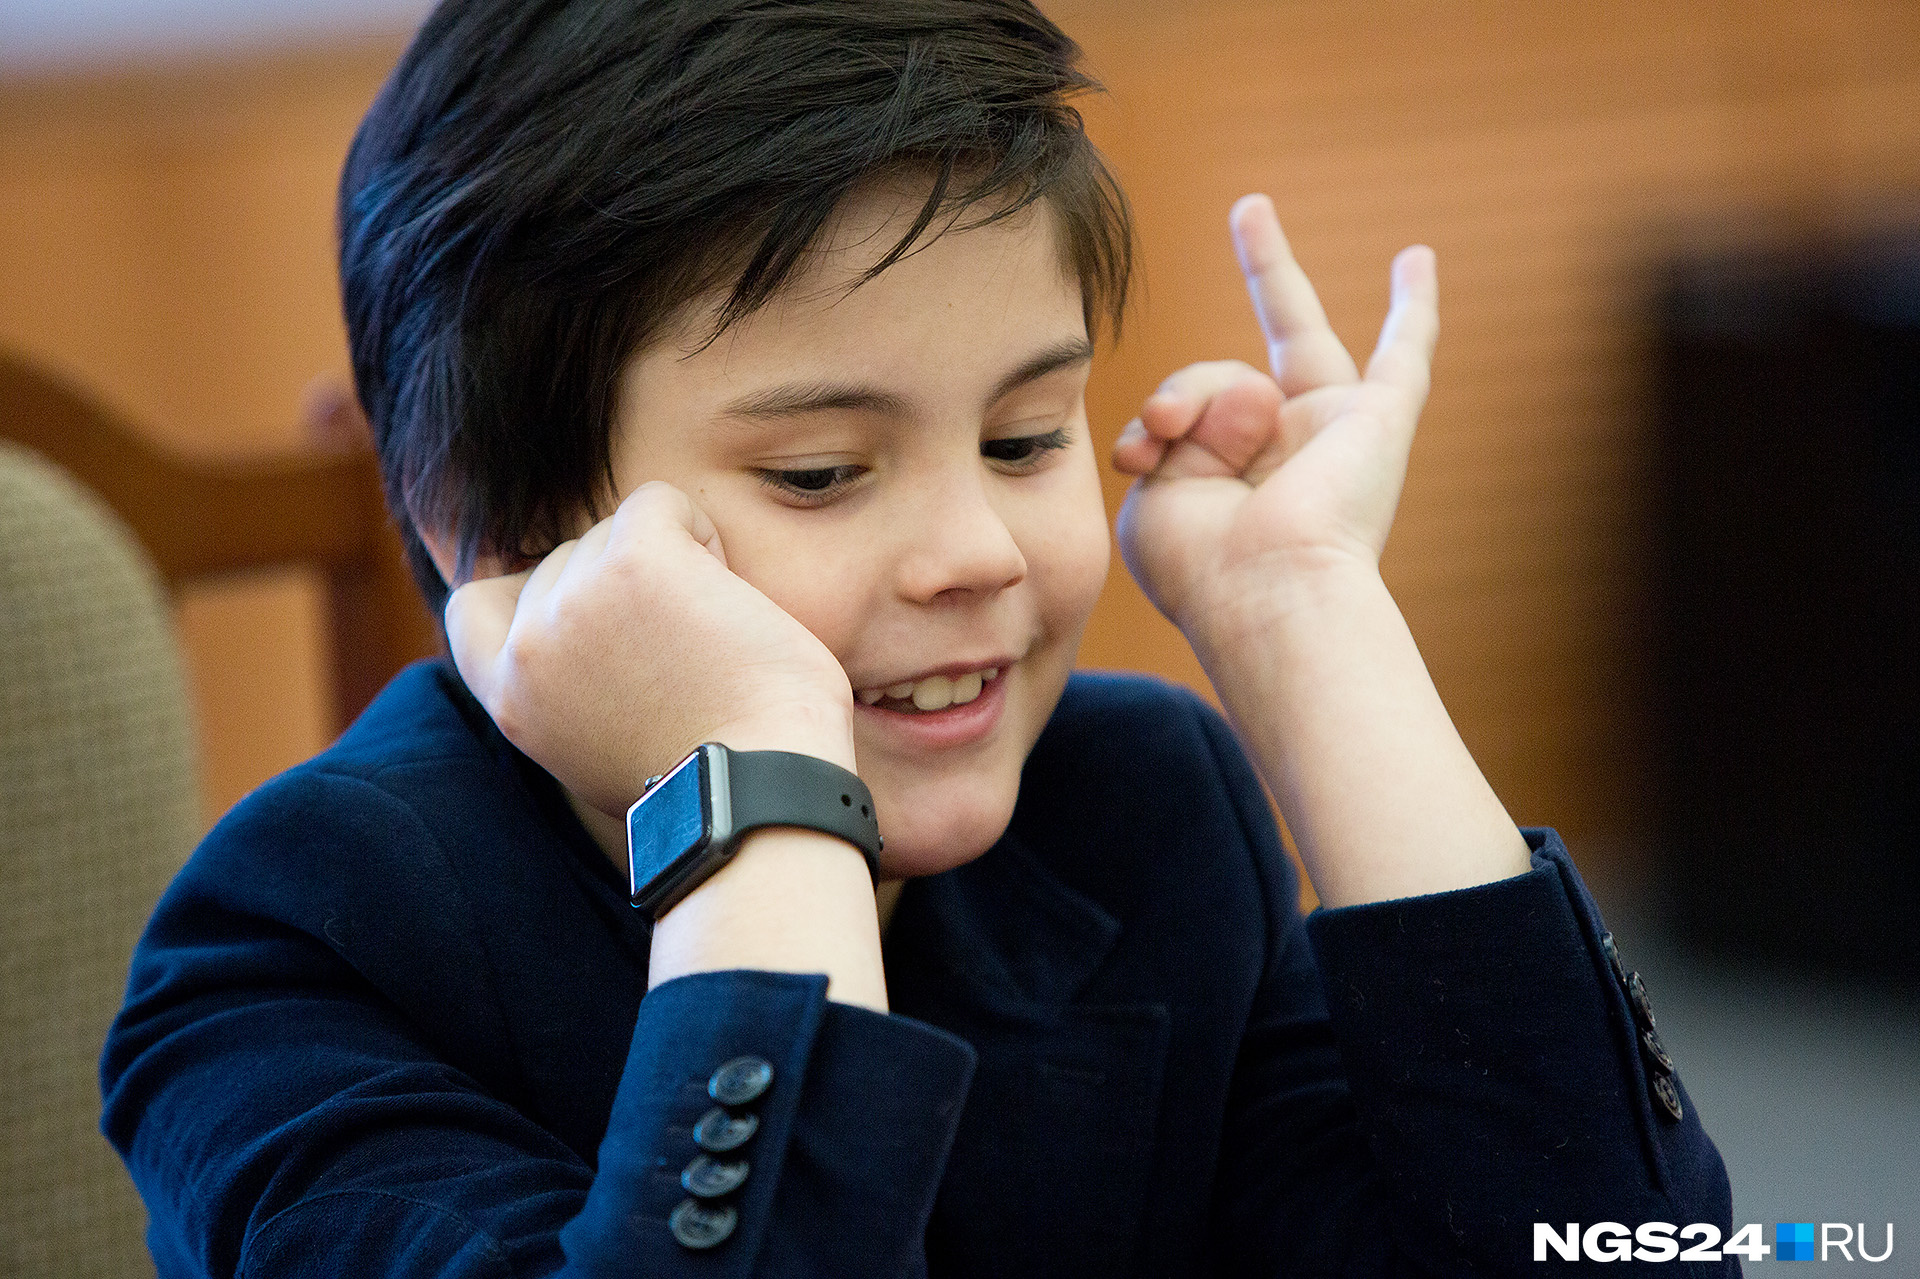 8-летний Тагир получил премию «Маленький человек года – 2018» в Красноярске